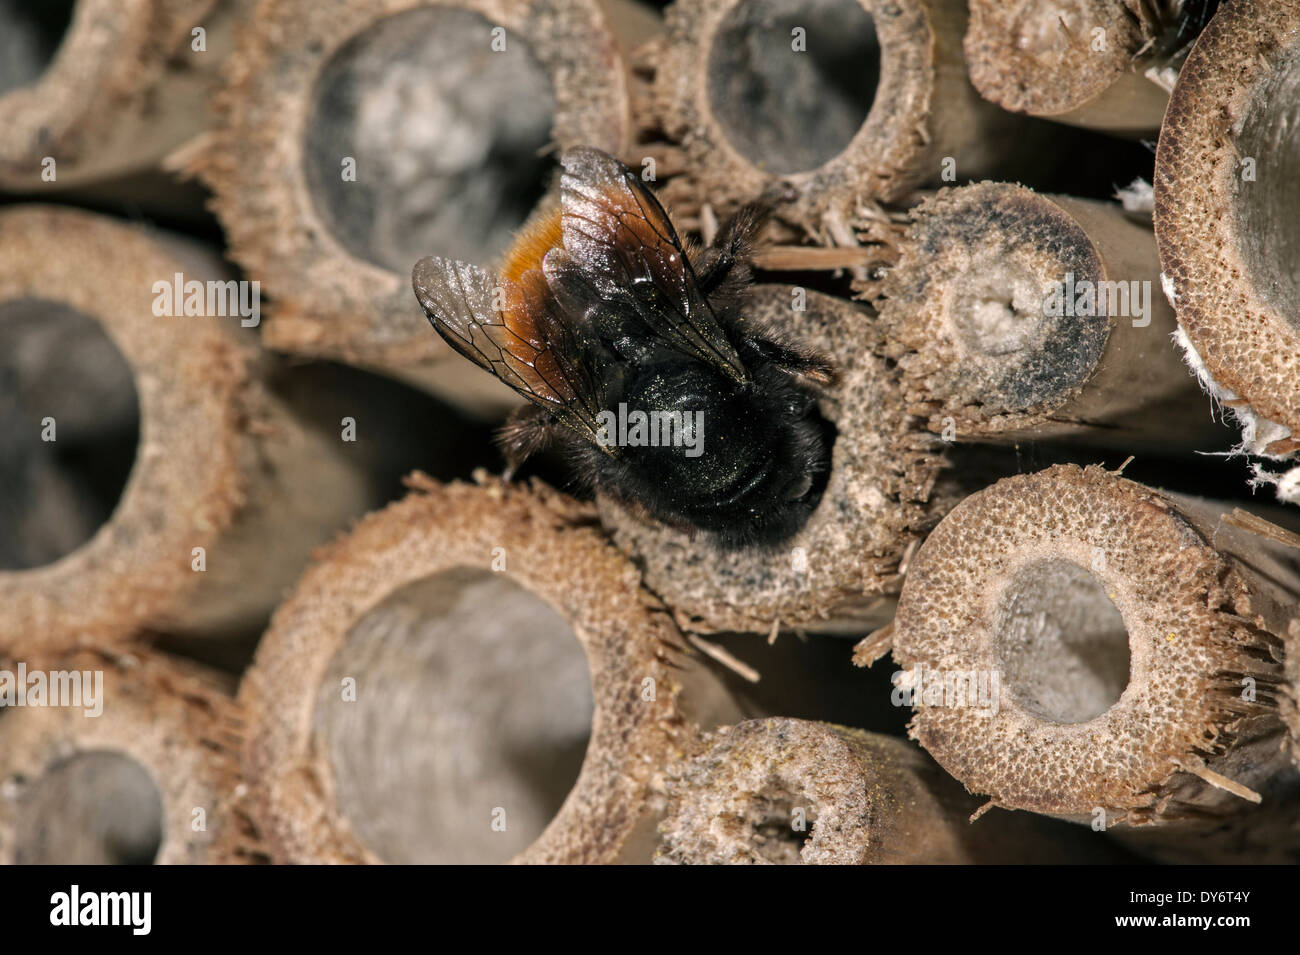 Mason bee / constructeur abeille / verger européen abeille Osmia cornuta - chargé de pollen et nectar - nichant dans la tige creuse à l'hôtel d'insectes pour les abeilles solitaires Banque D'Images